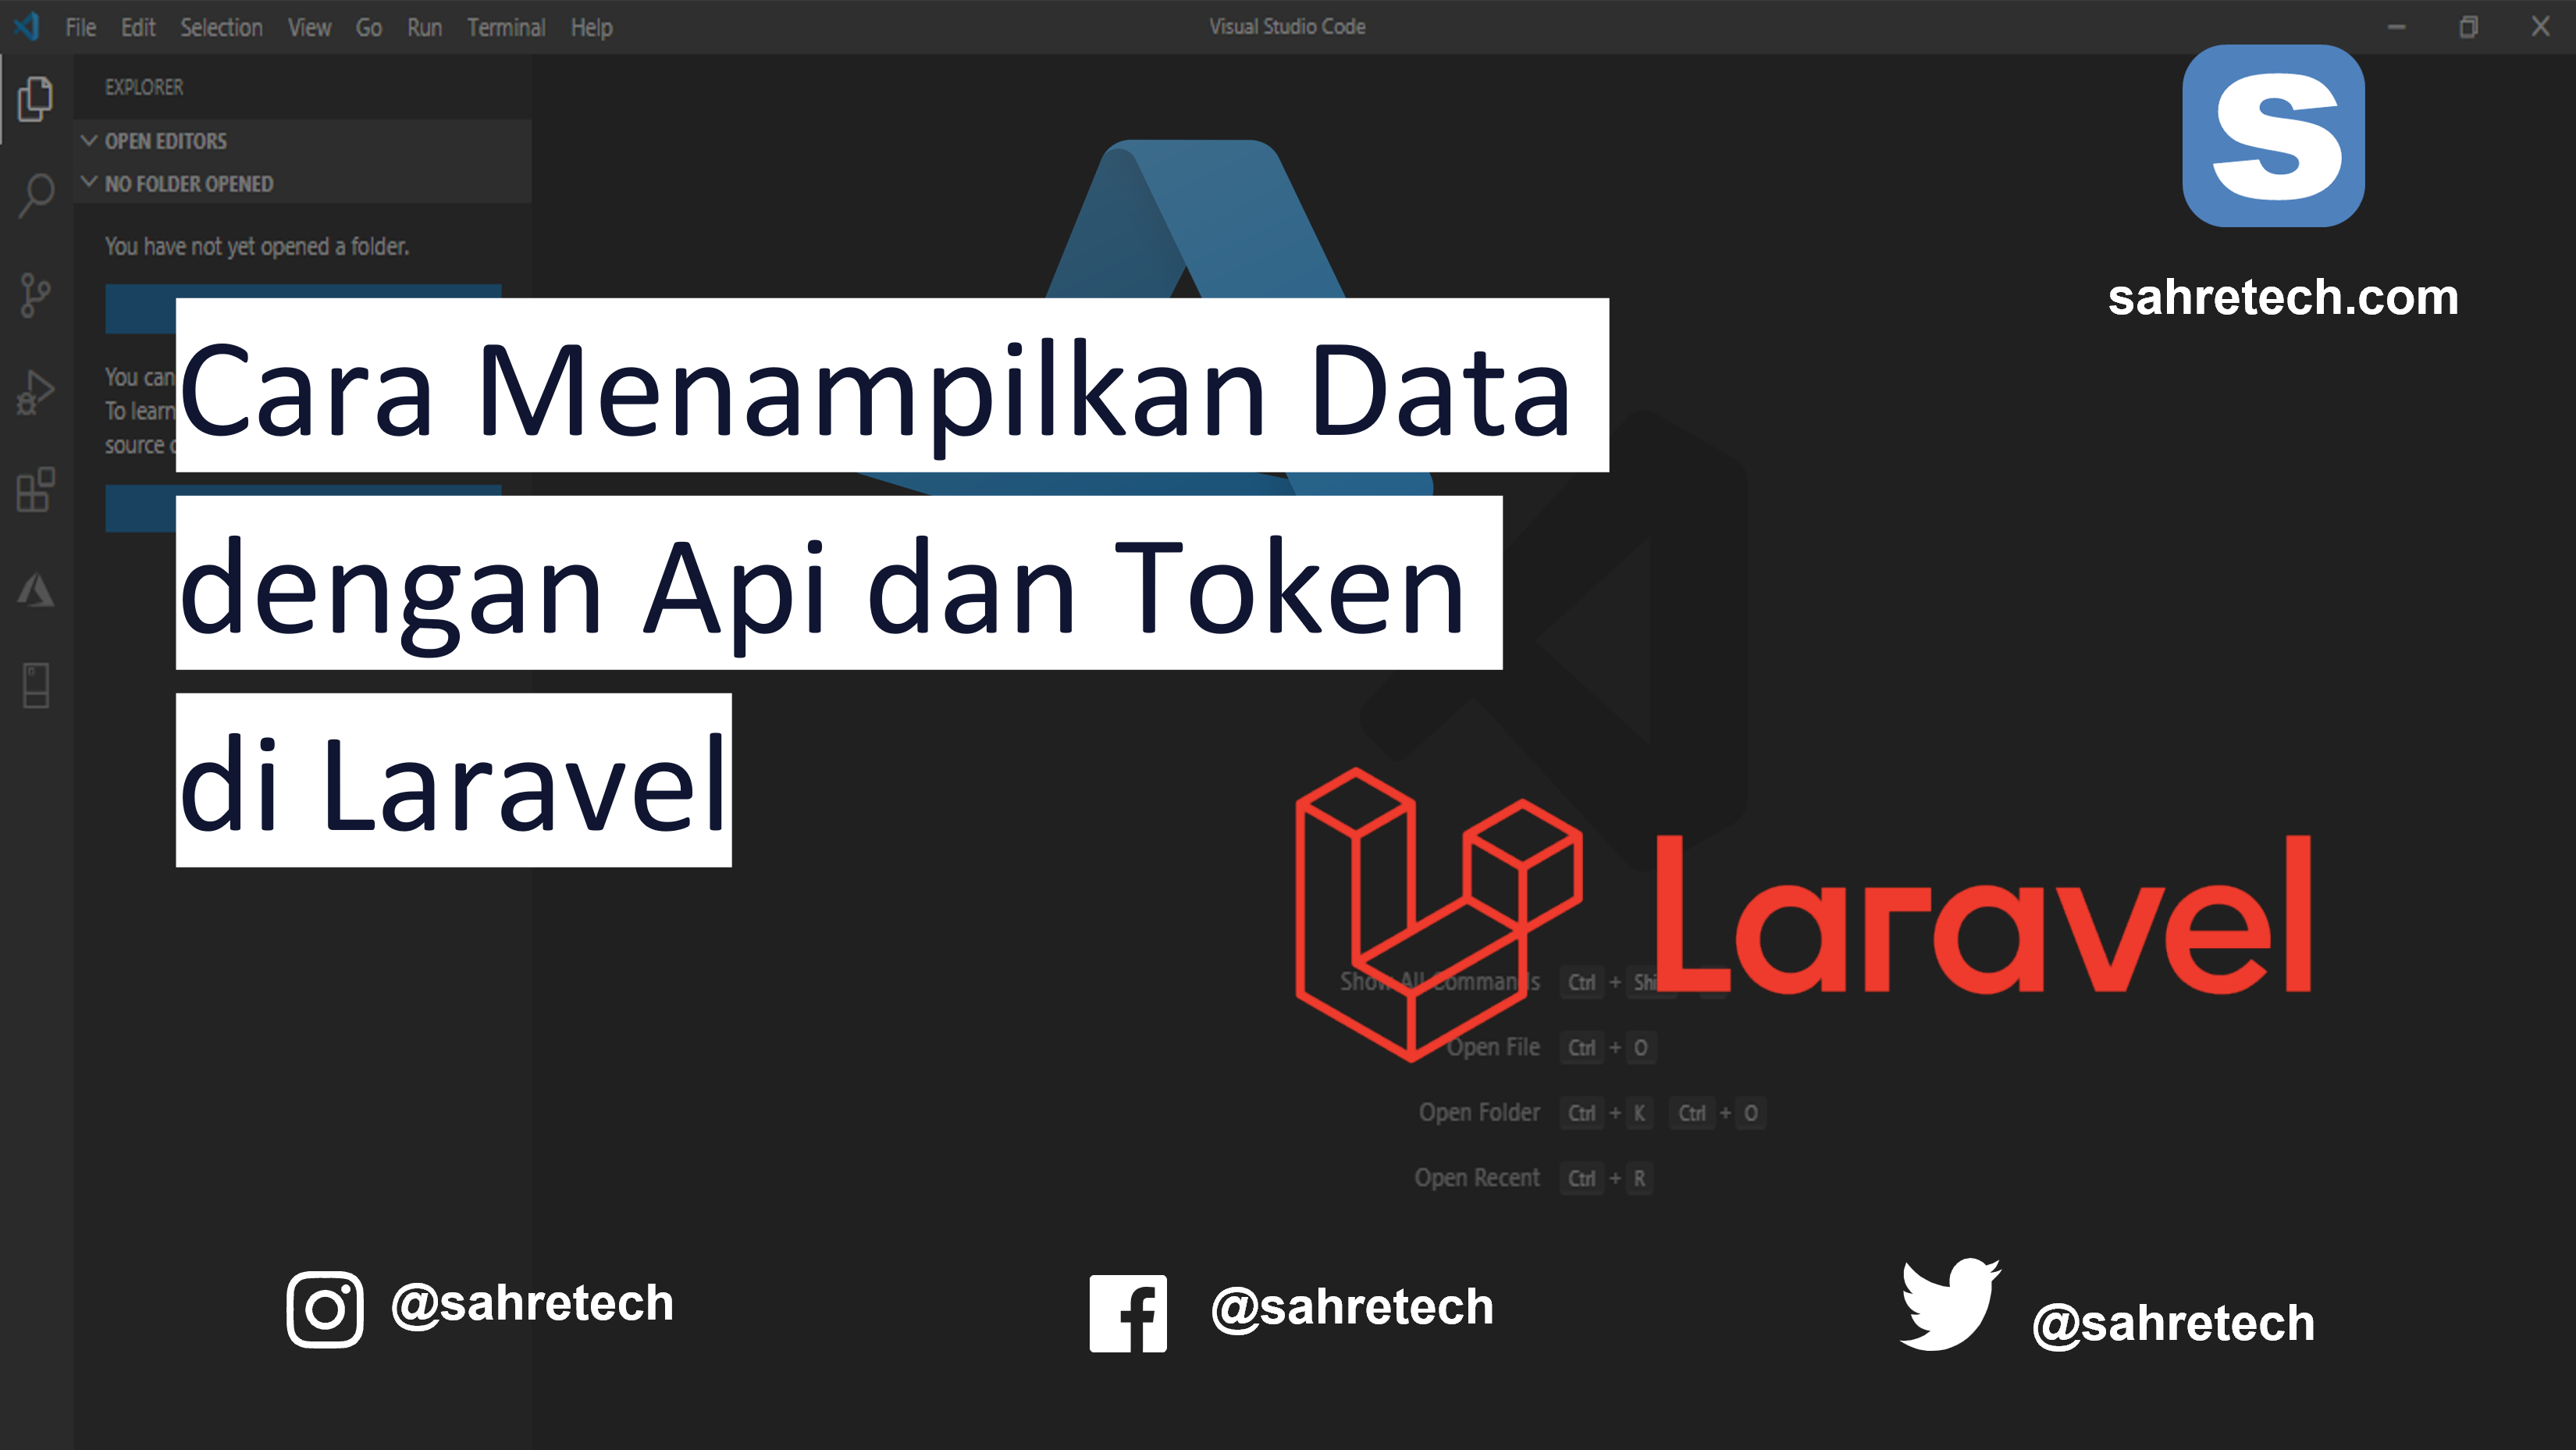 Cara Menampilkan Data dengan Api dan Token di Laravel